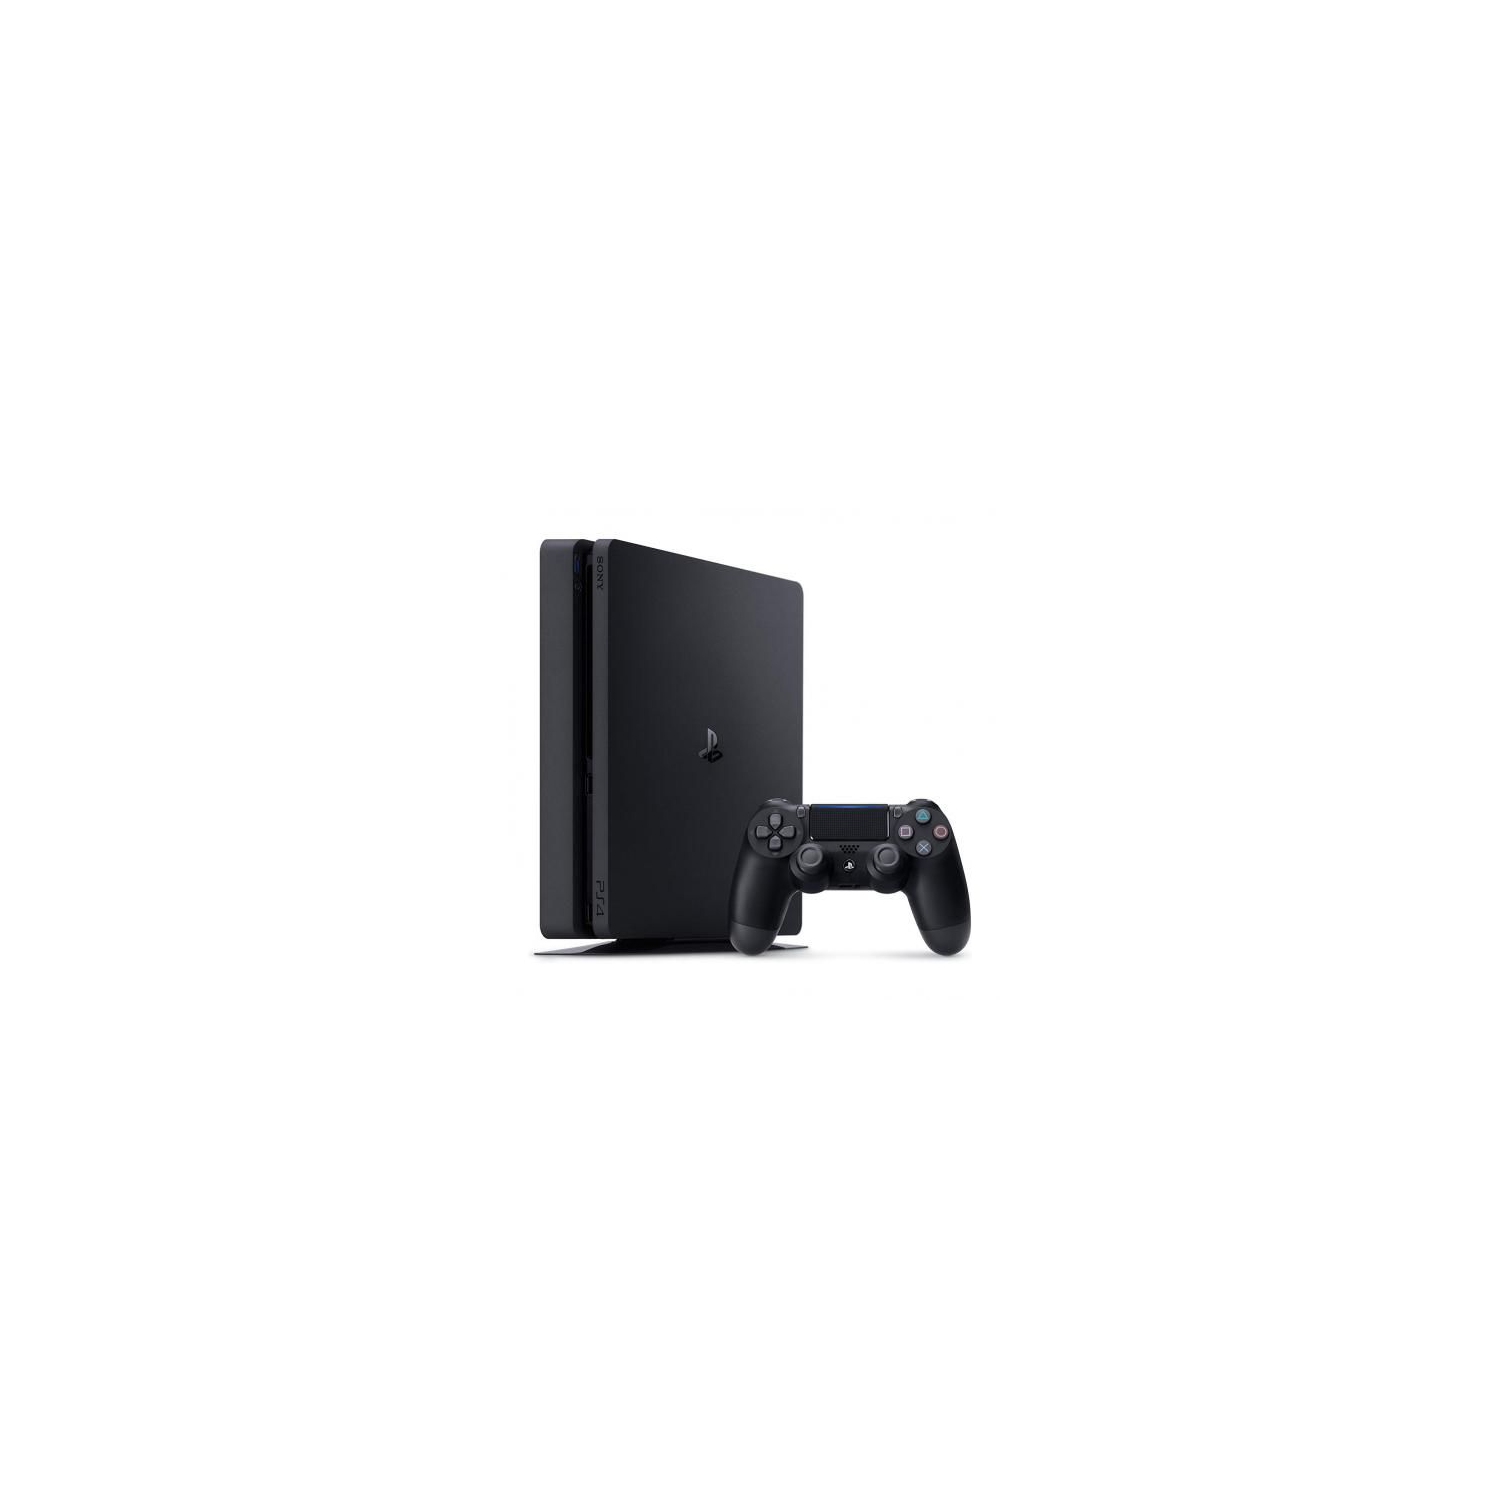 Refurbished (Good) - Sony PlayStation 4 Slim 500GB Console